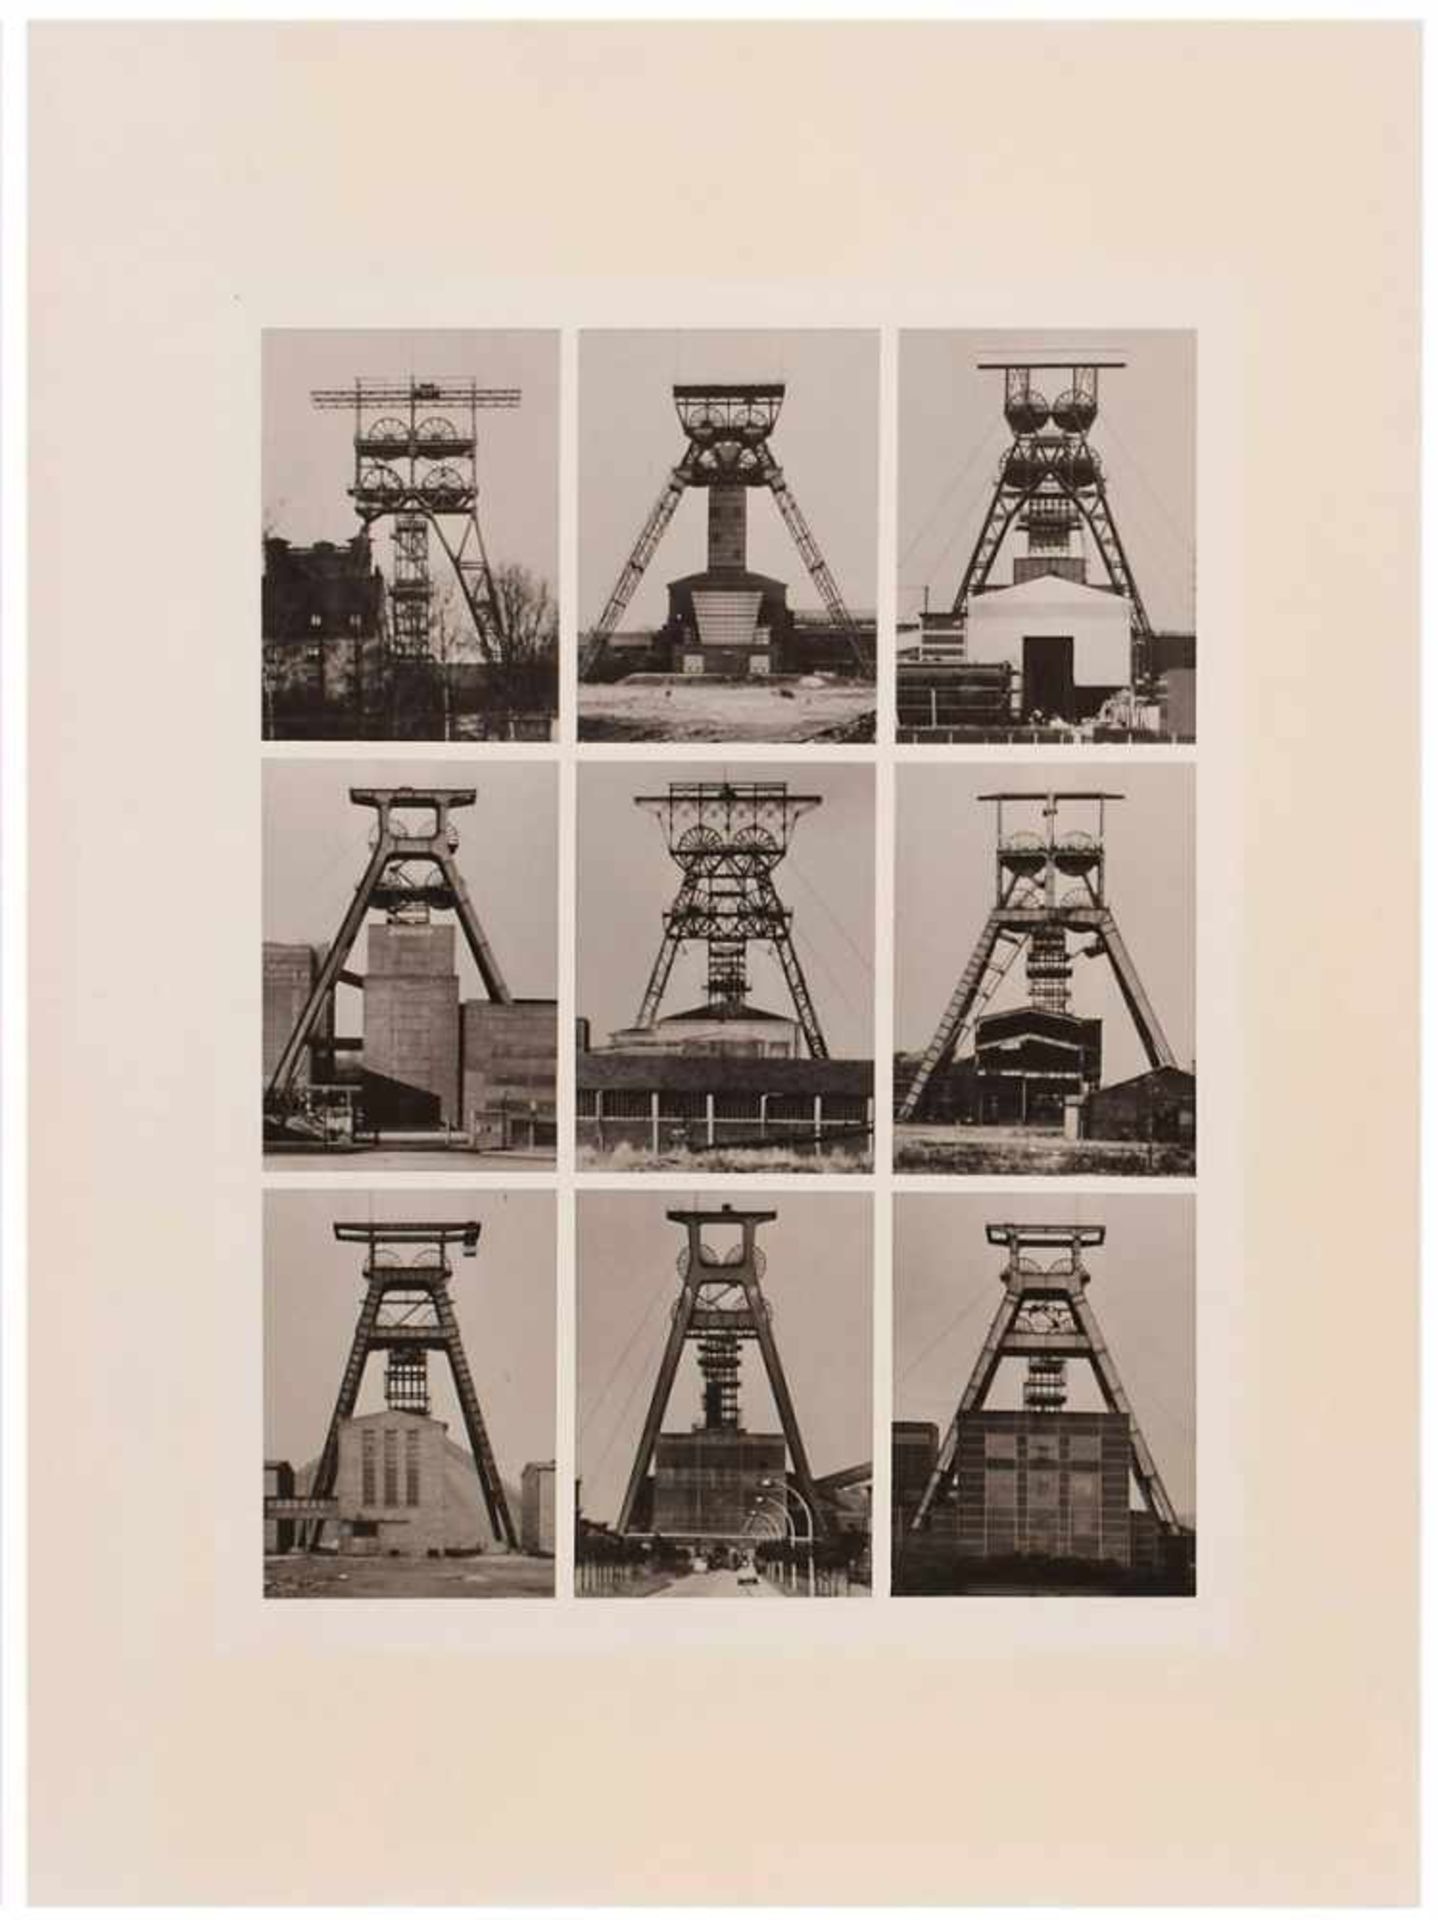 4 s/w Fotosnach Bernd & Hilla Becher "Industriebauten" um 1970 auf Baryt. 39,8 x 29,9 cm, o.R. etwas - Image 4 of 5